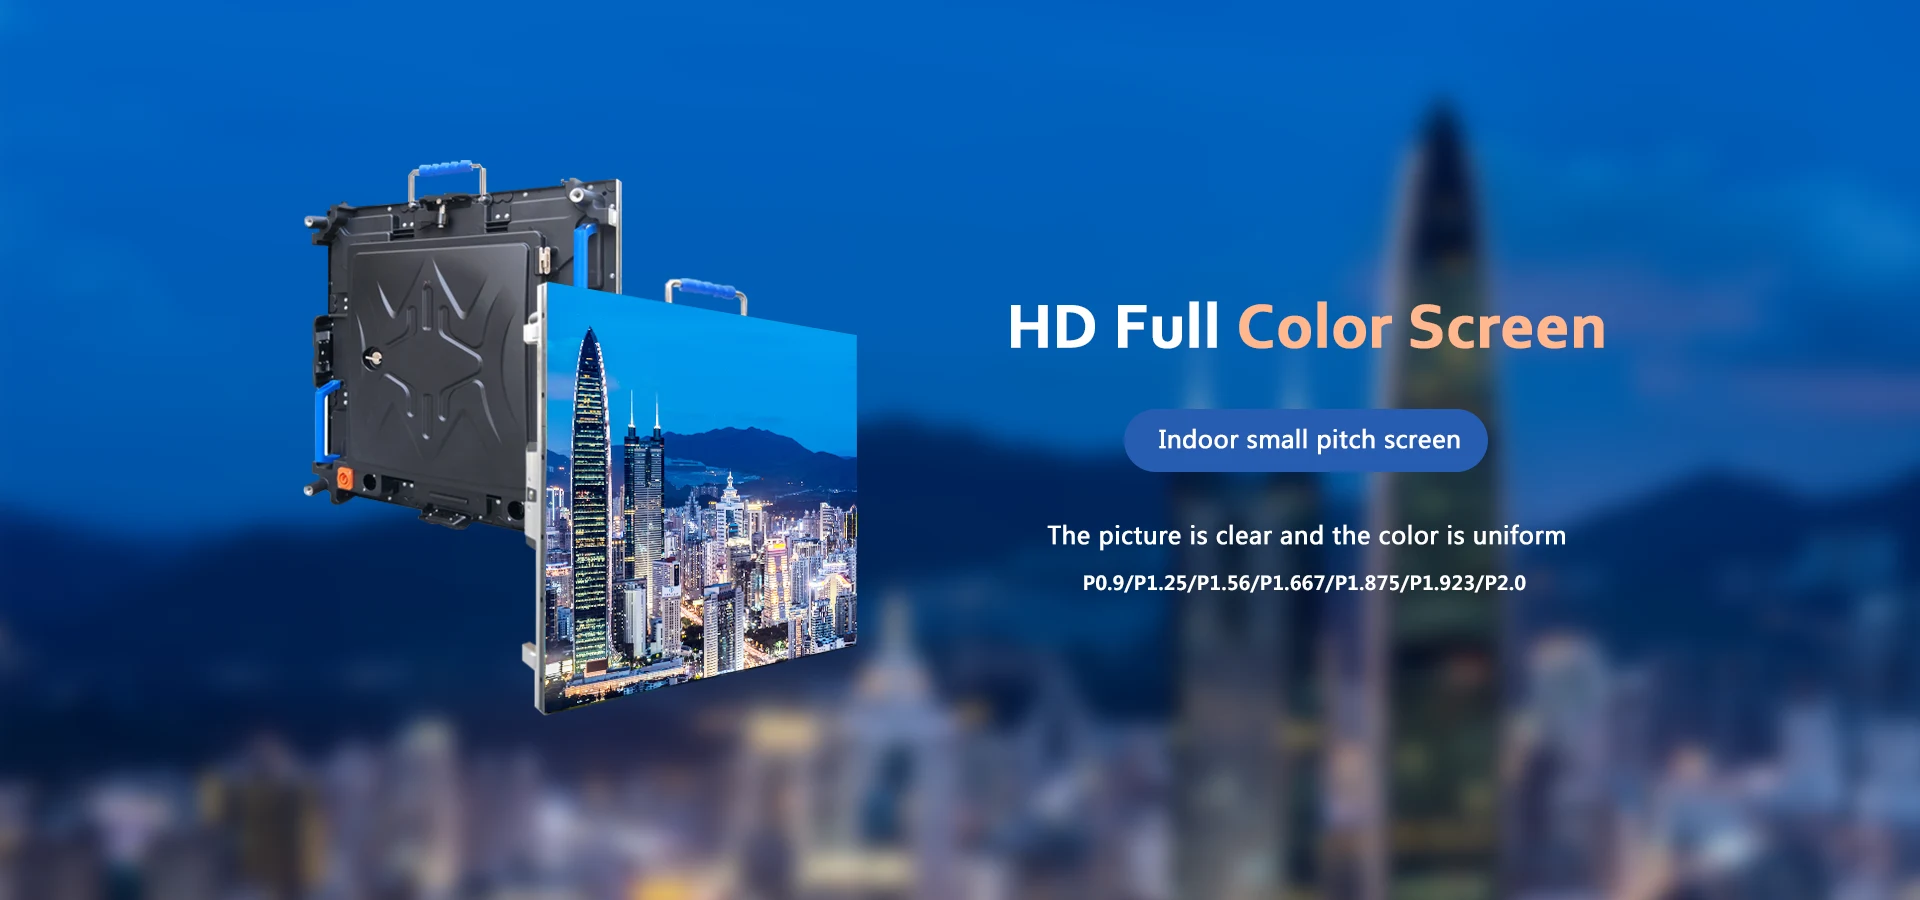 Kina Smd fullfarge LED-skjerm innendørs produsenter